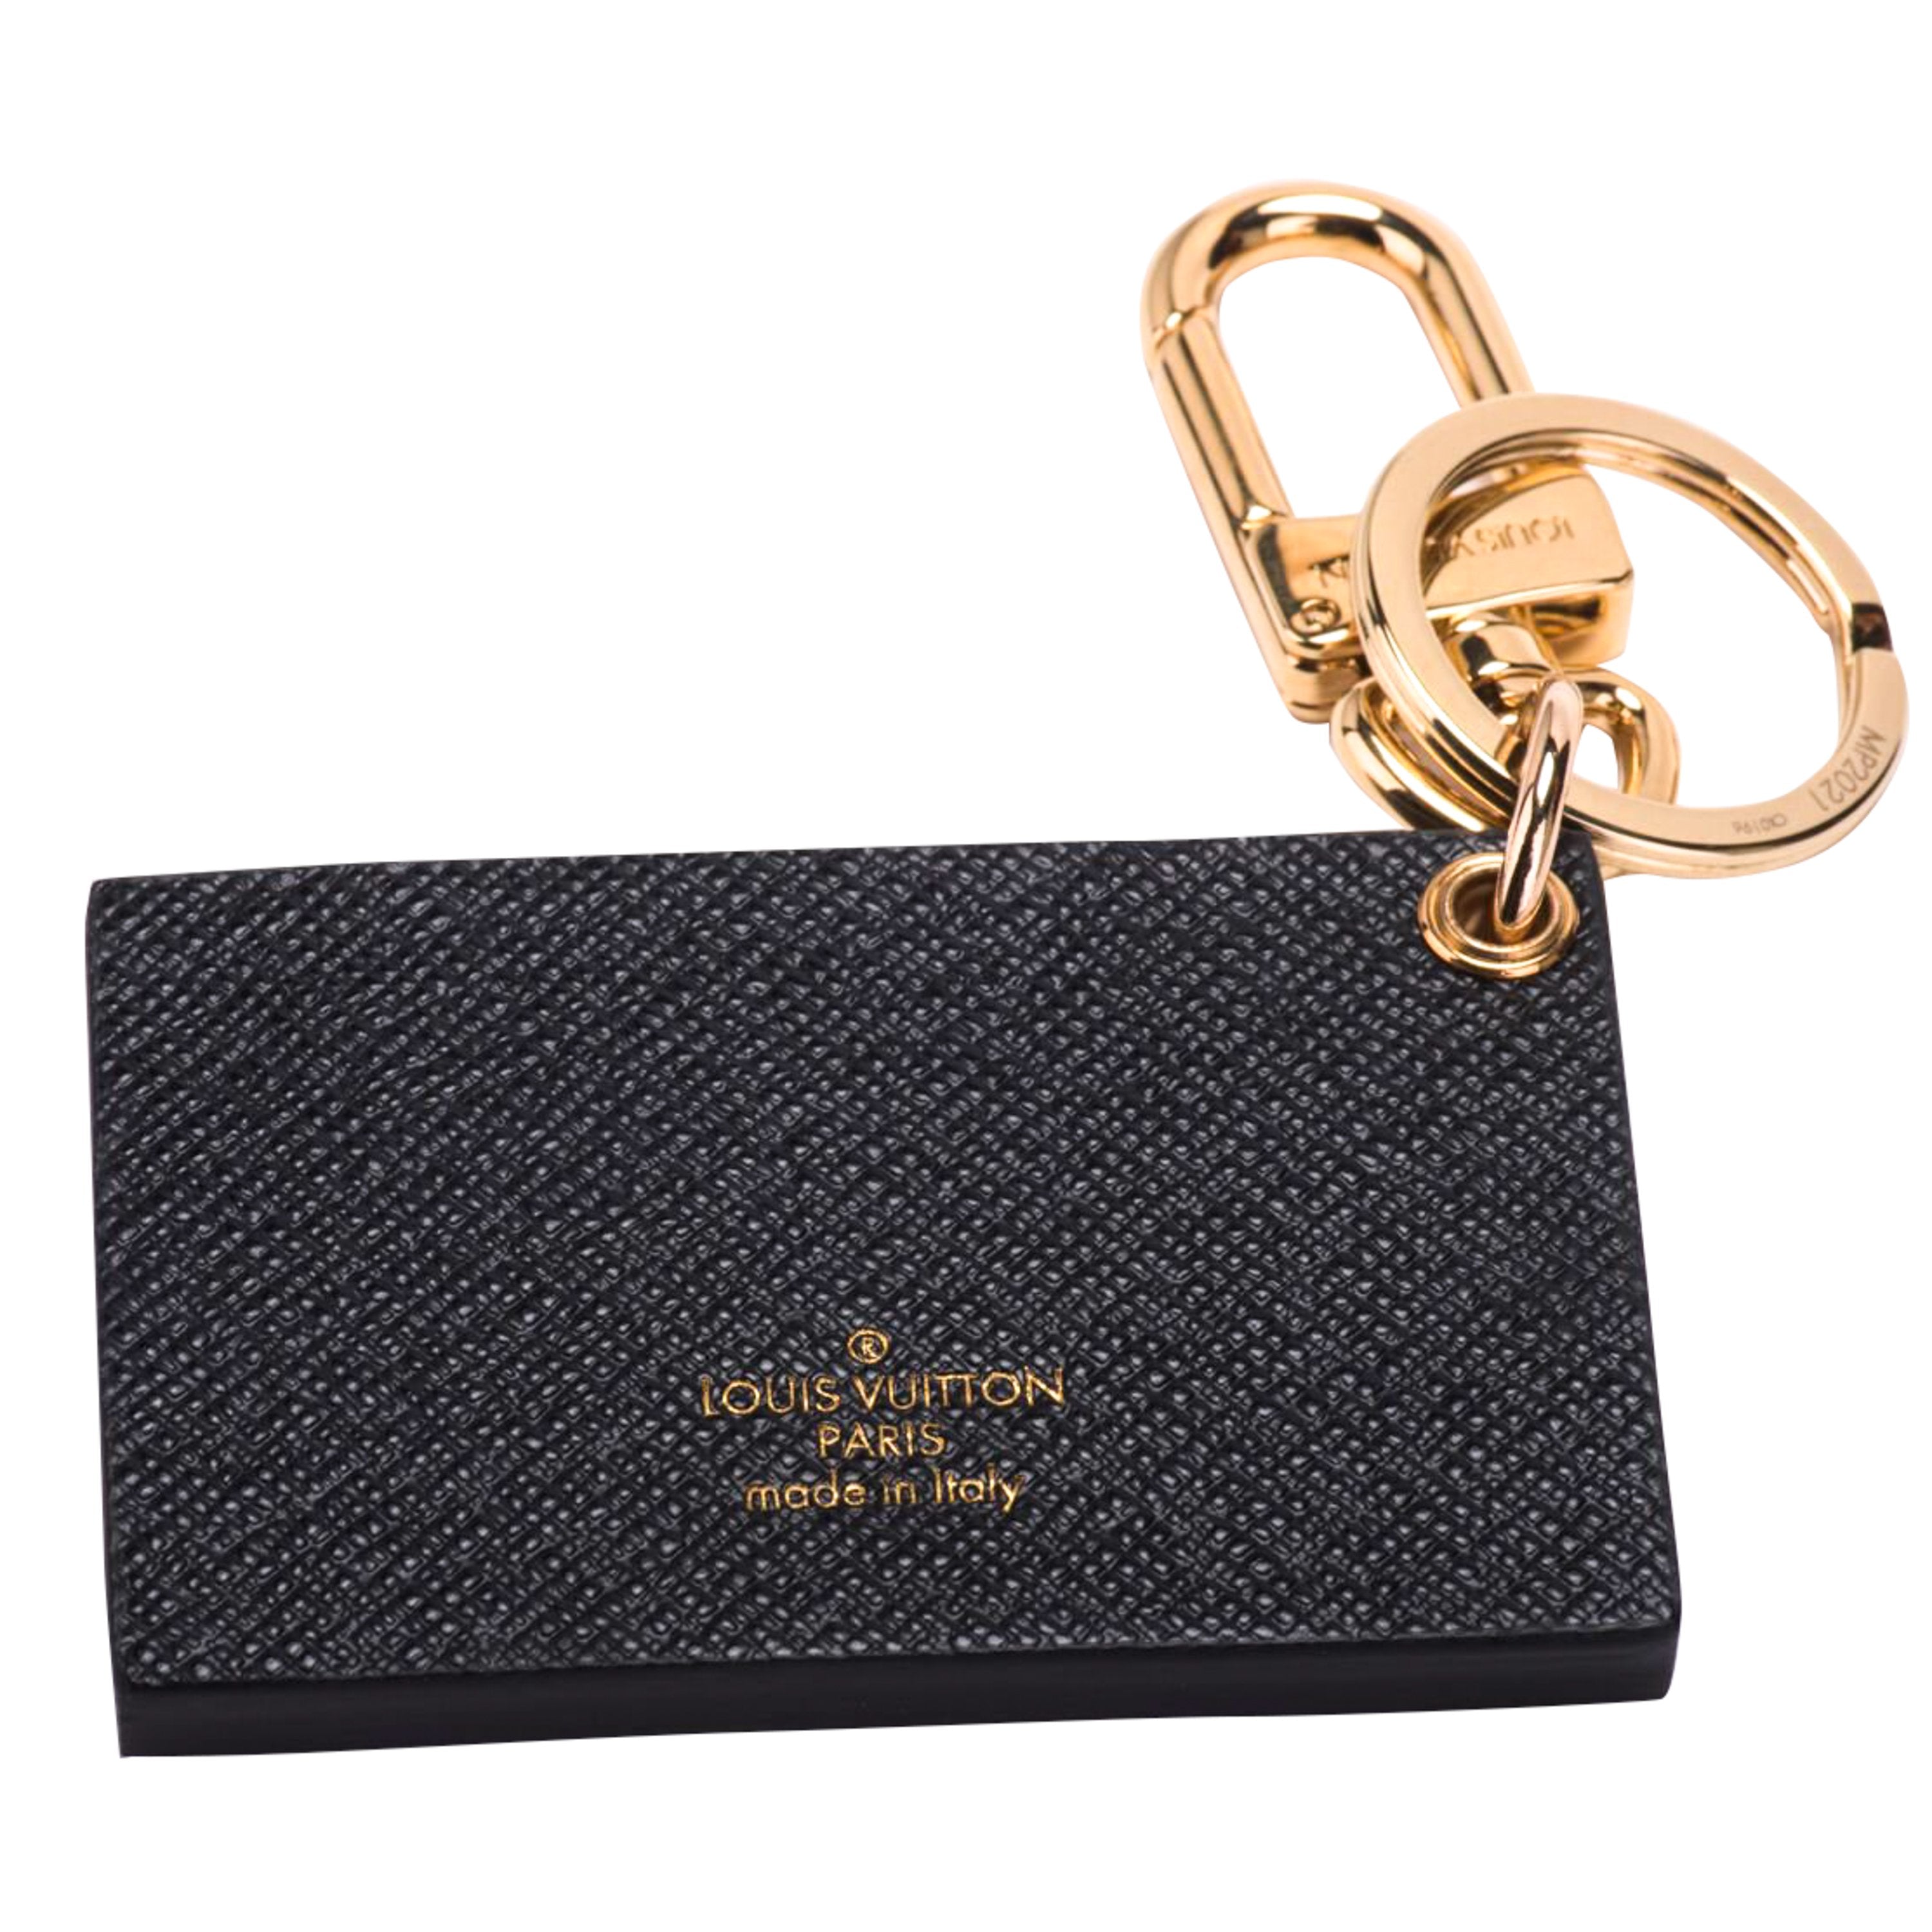 Louis Vuitton Limited Edition Bag Charm - Vintage Lux